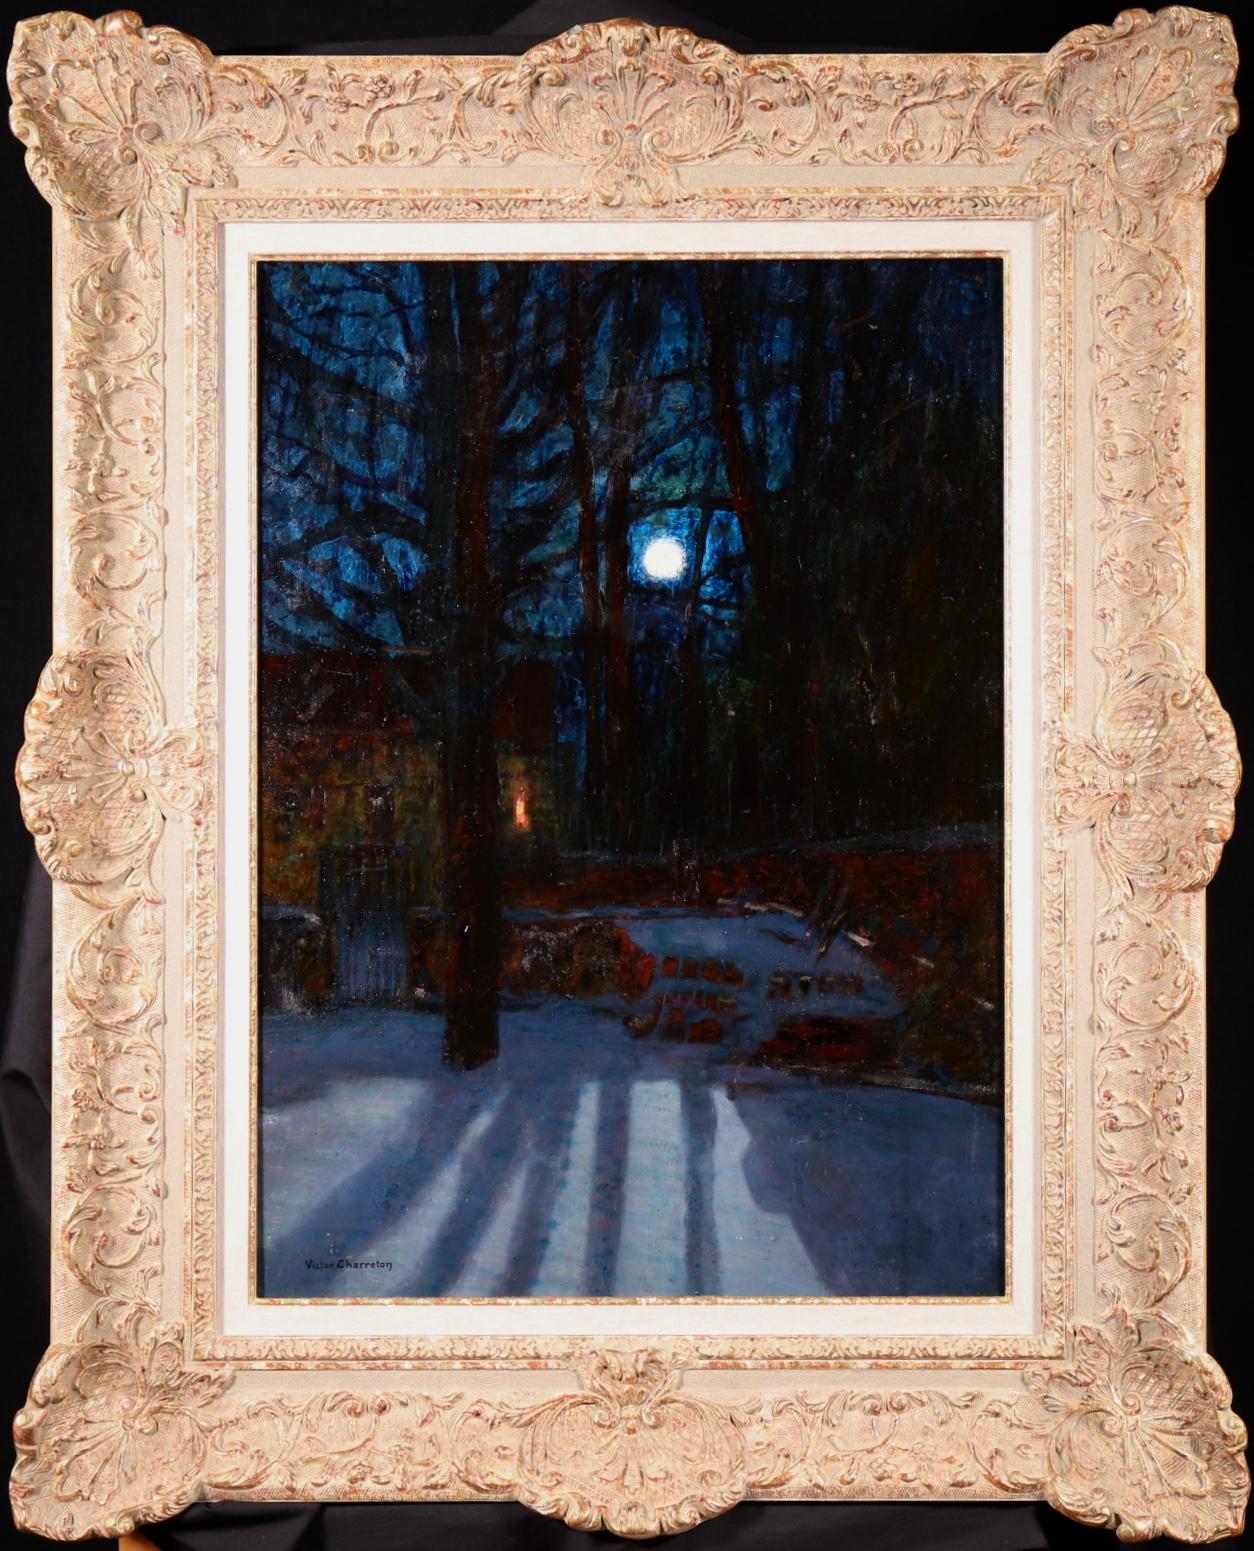 Stunning unterzeichnet Öl auf dem Brett circa 1920 von gesuchten Französisch post impressionistischen Maler Victor Charreton. Das Werk zeigt eine Hütte inmitten kahler Bäume, auf deren Boden dicker Schnee liegt. Der Mond scheint hell in den klaren